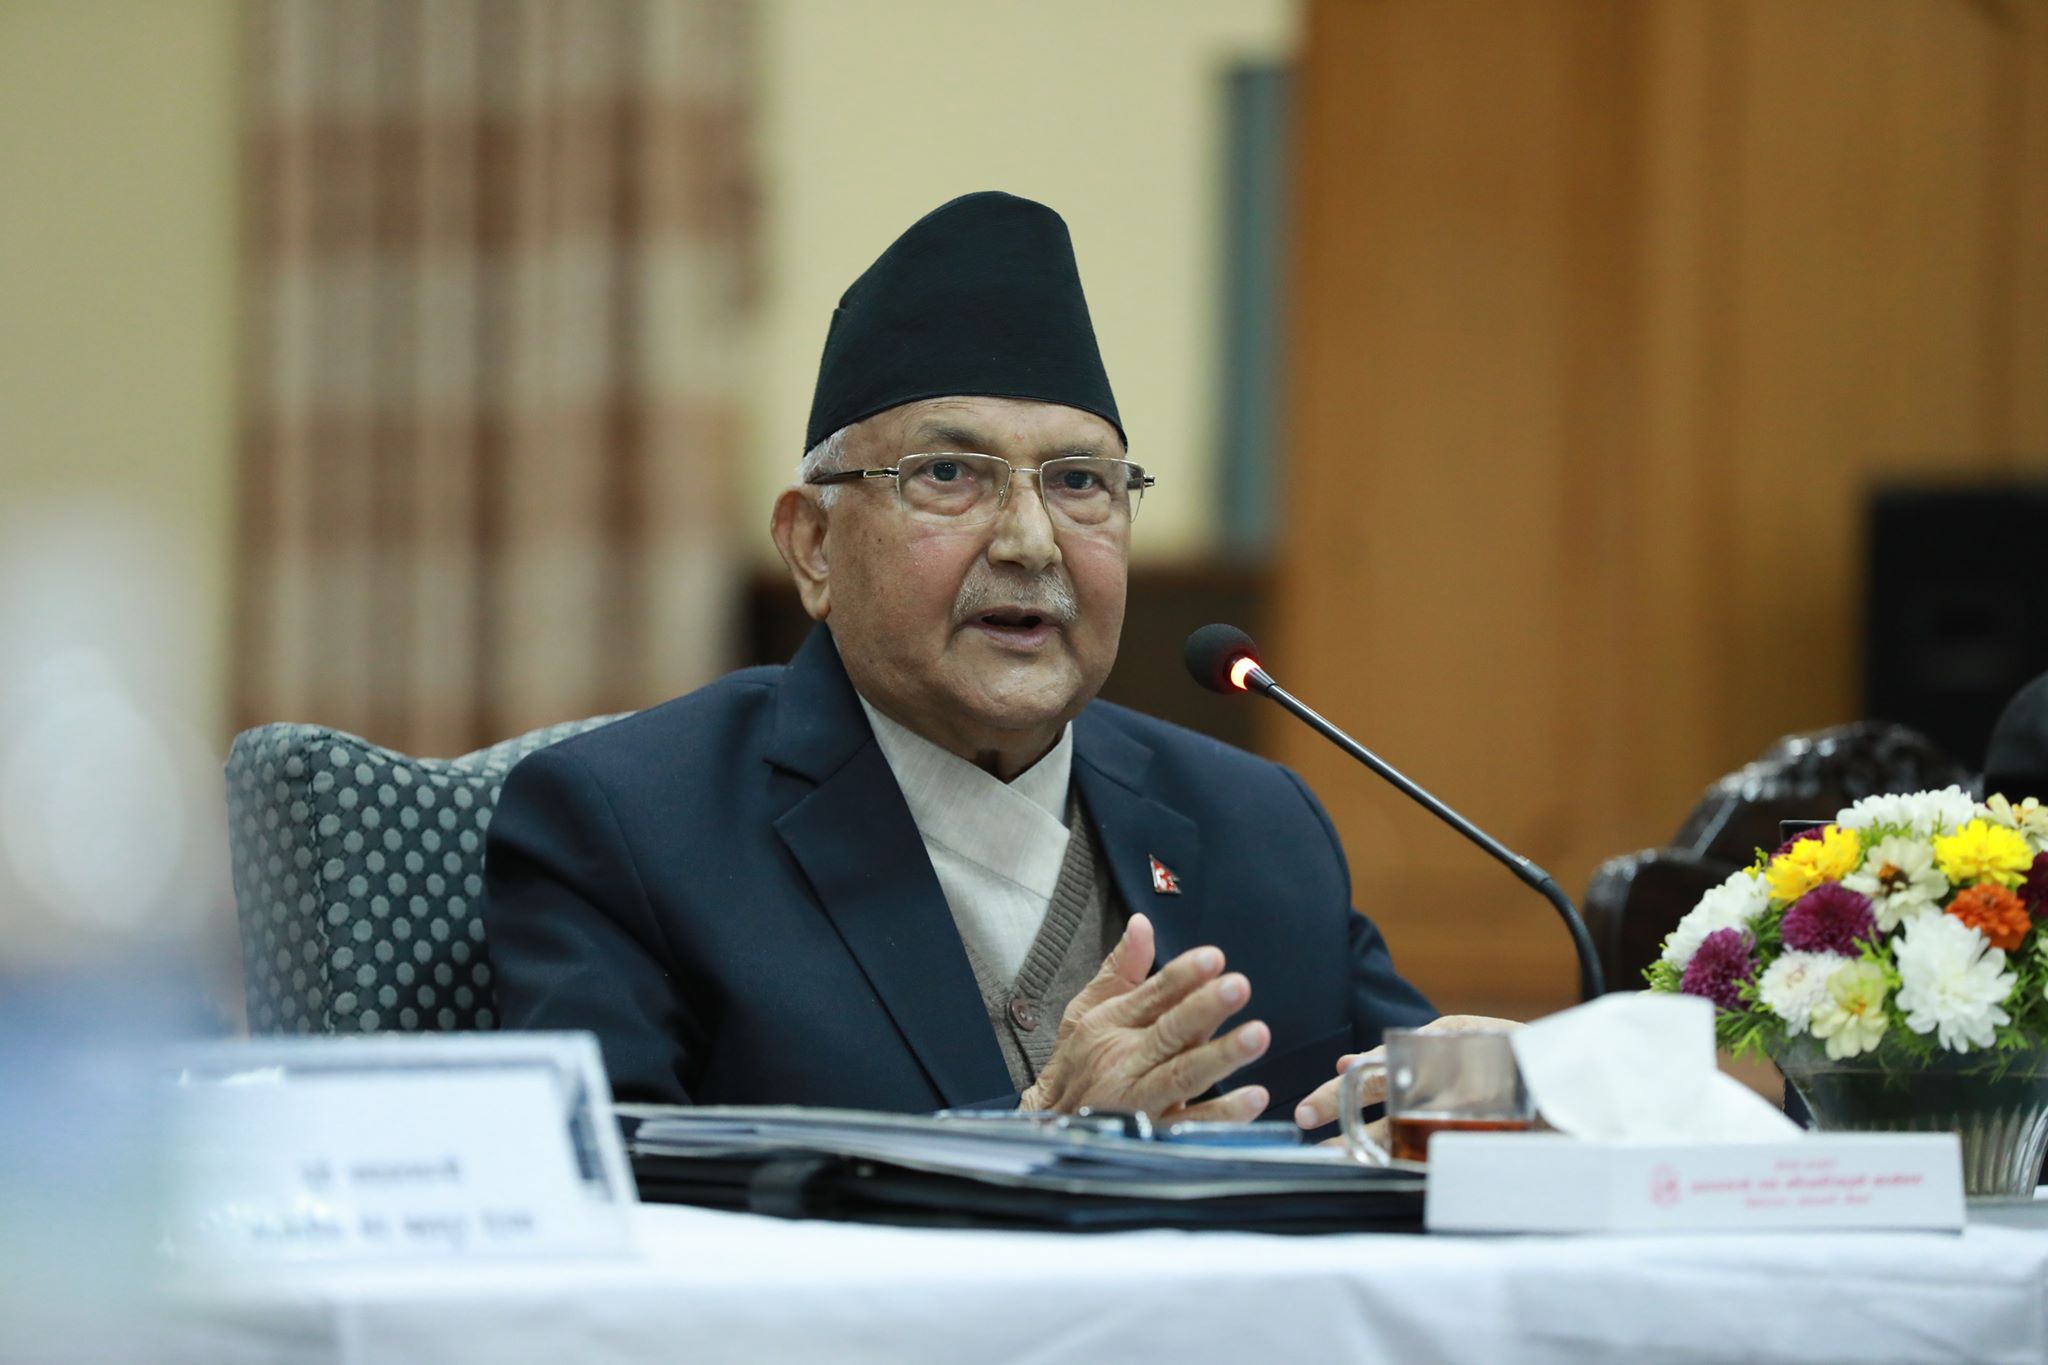 प्रधानमन्त्री ओलीको संकल्प : नेपाललाई २०७८ भित्र सडकआश्रित मानवरहित राष्ट्र बनाइने